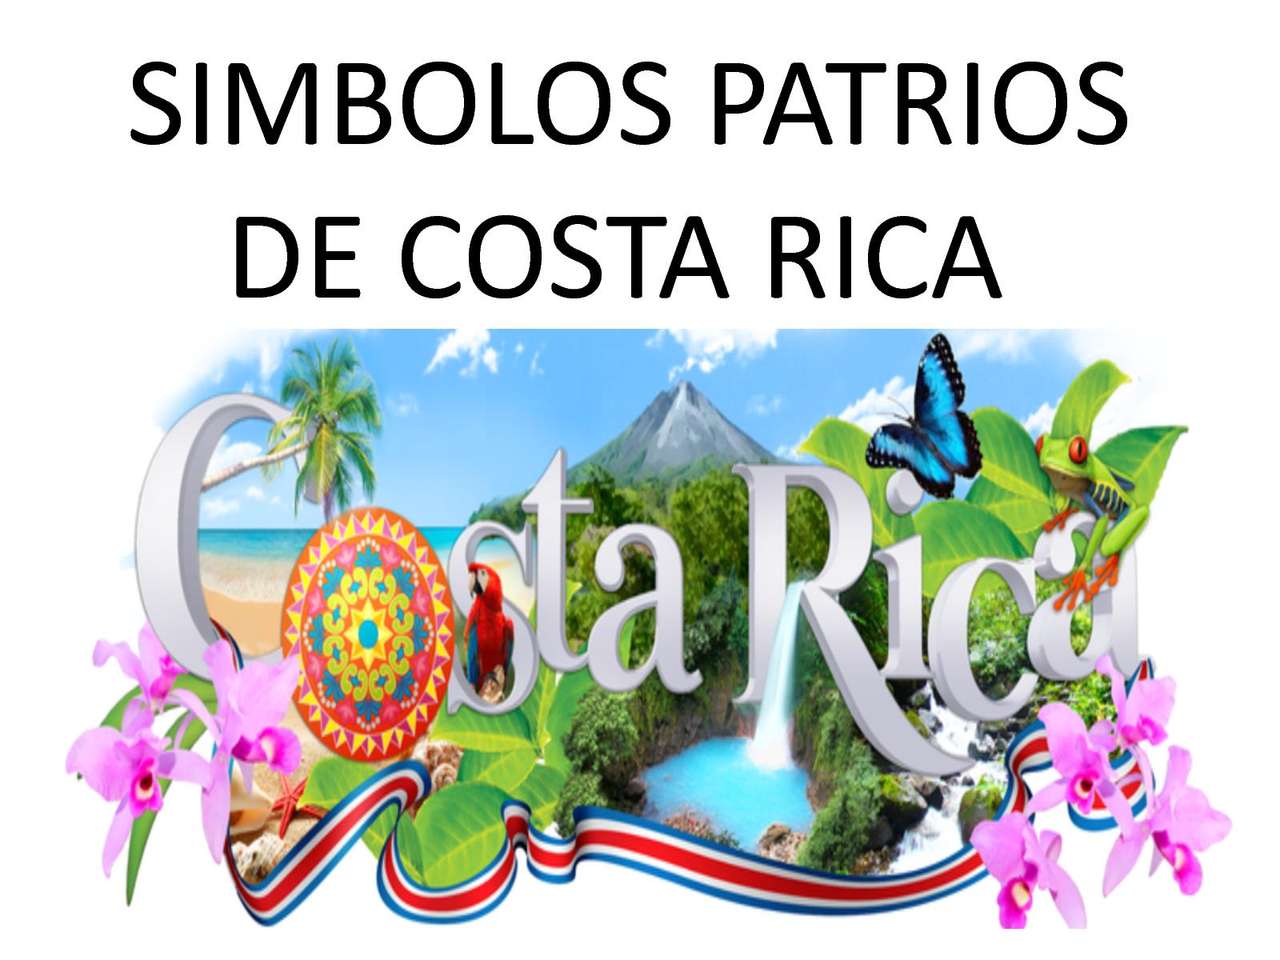 Символы. Коста-Рика пазл онлайн